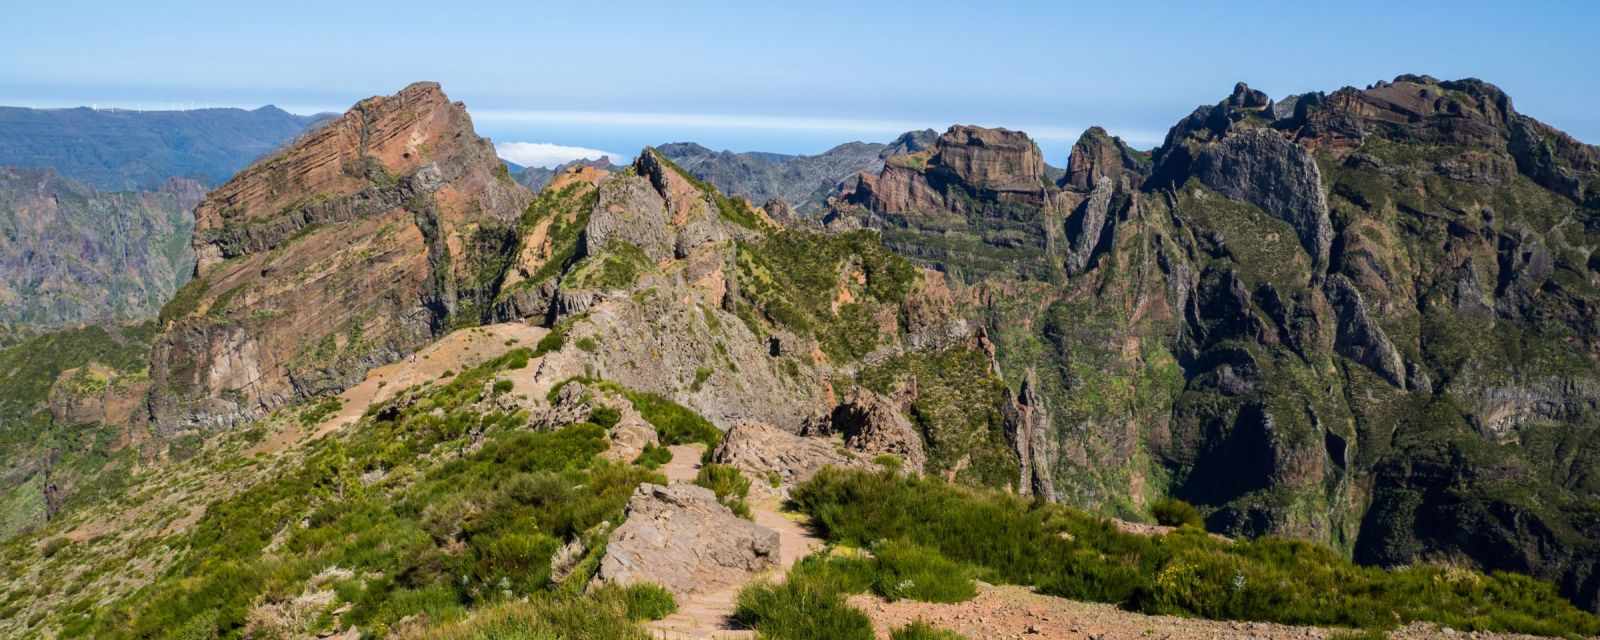 Pico do Arieiro to Pico Ruivo in Madeira - PR1 Hiking Details and Tips